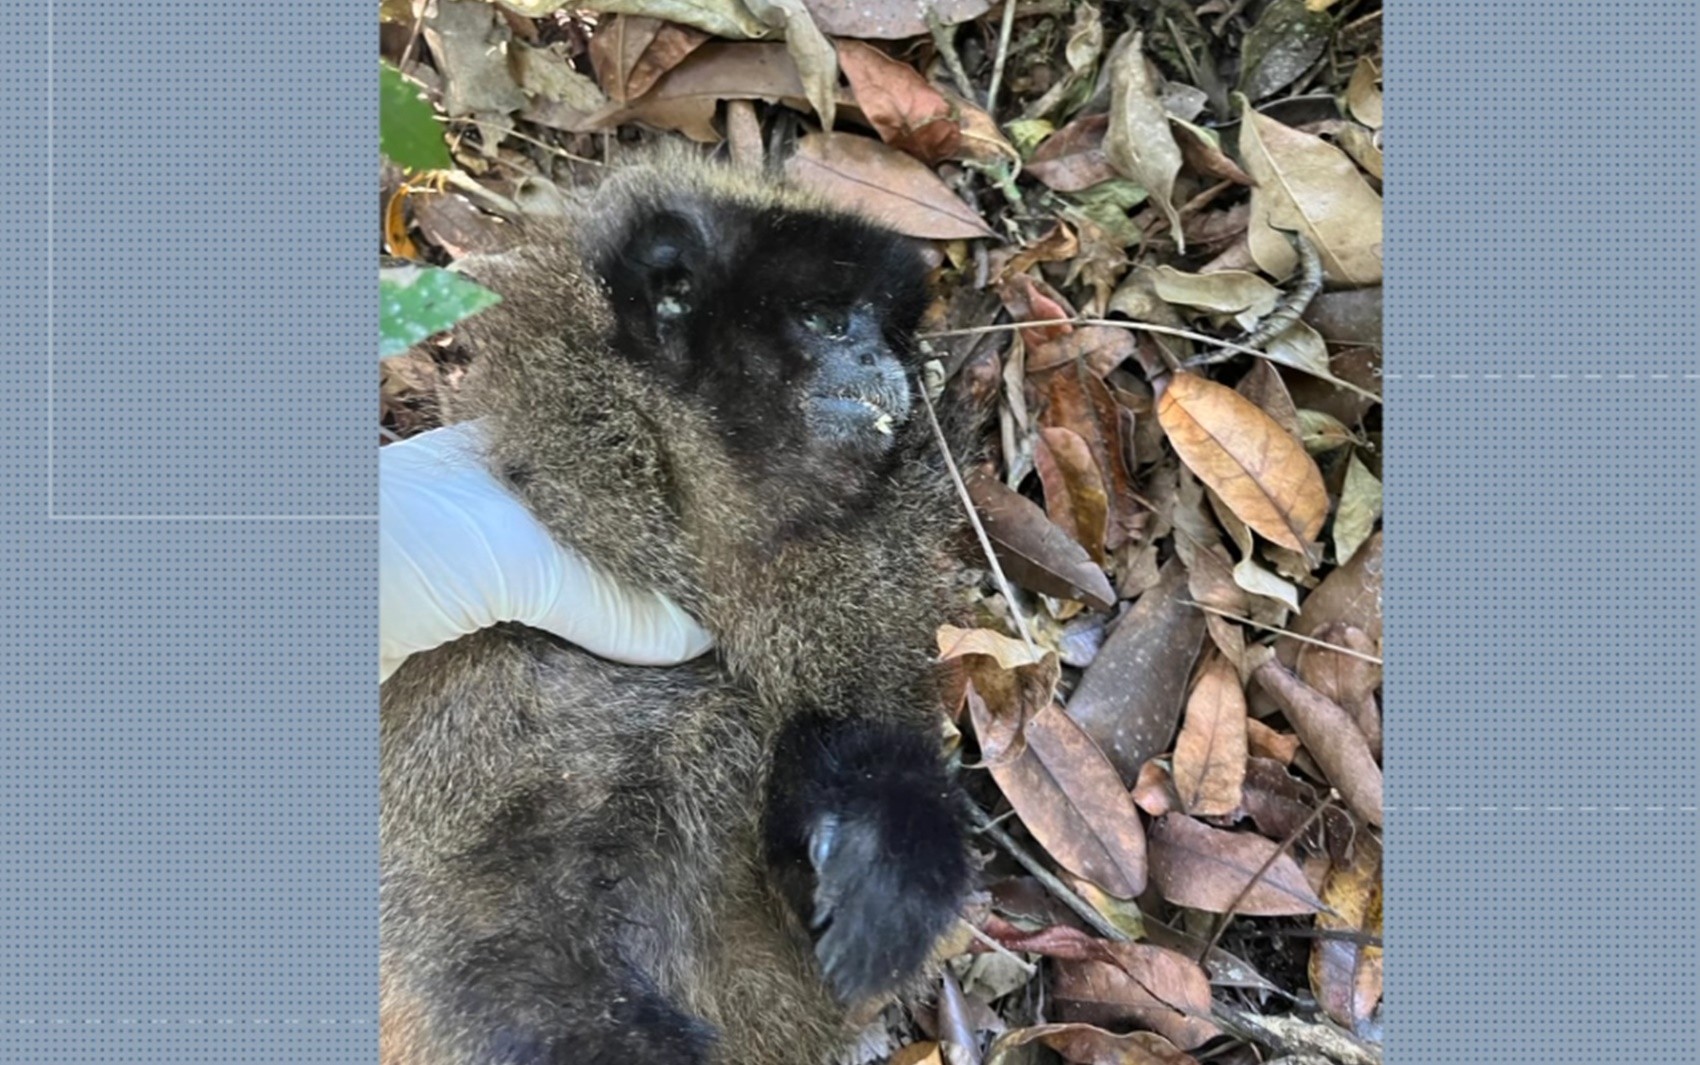 Prefeitura de Santa Rita de Caldas reforça vacinação contra febre amarela após macaco ser encontrado morto